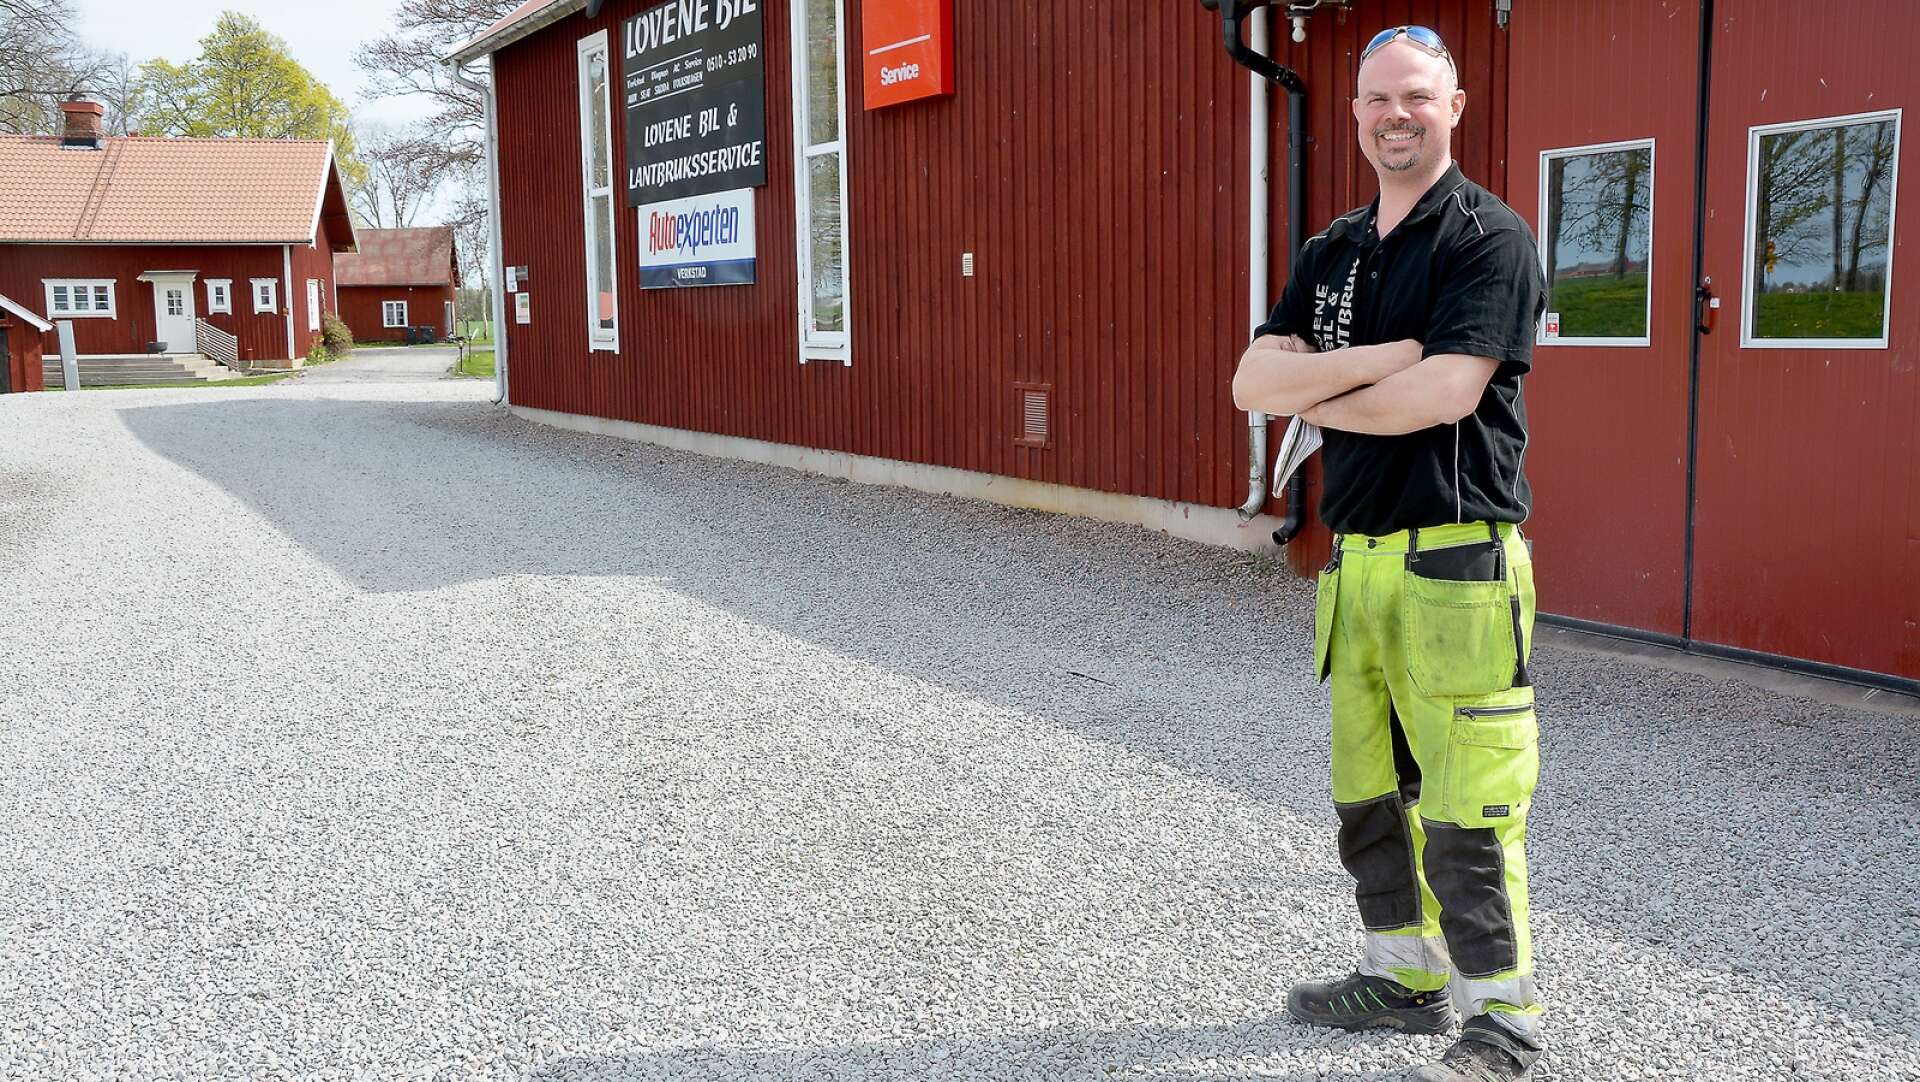 2005 tog Fredrik Haraldsson över släktgården i Lovene, strax utanför Lidköping. I dag är gården centrum för flera av hans företag, som bland annat vänder sig till kunder på landsbygden.